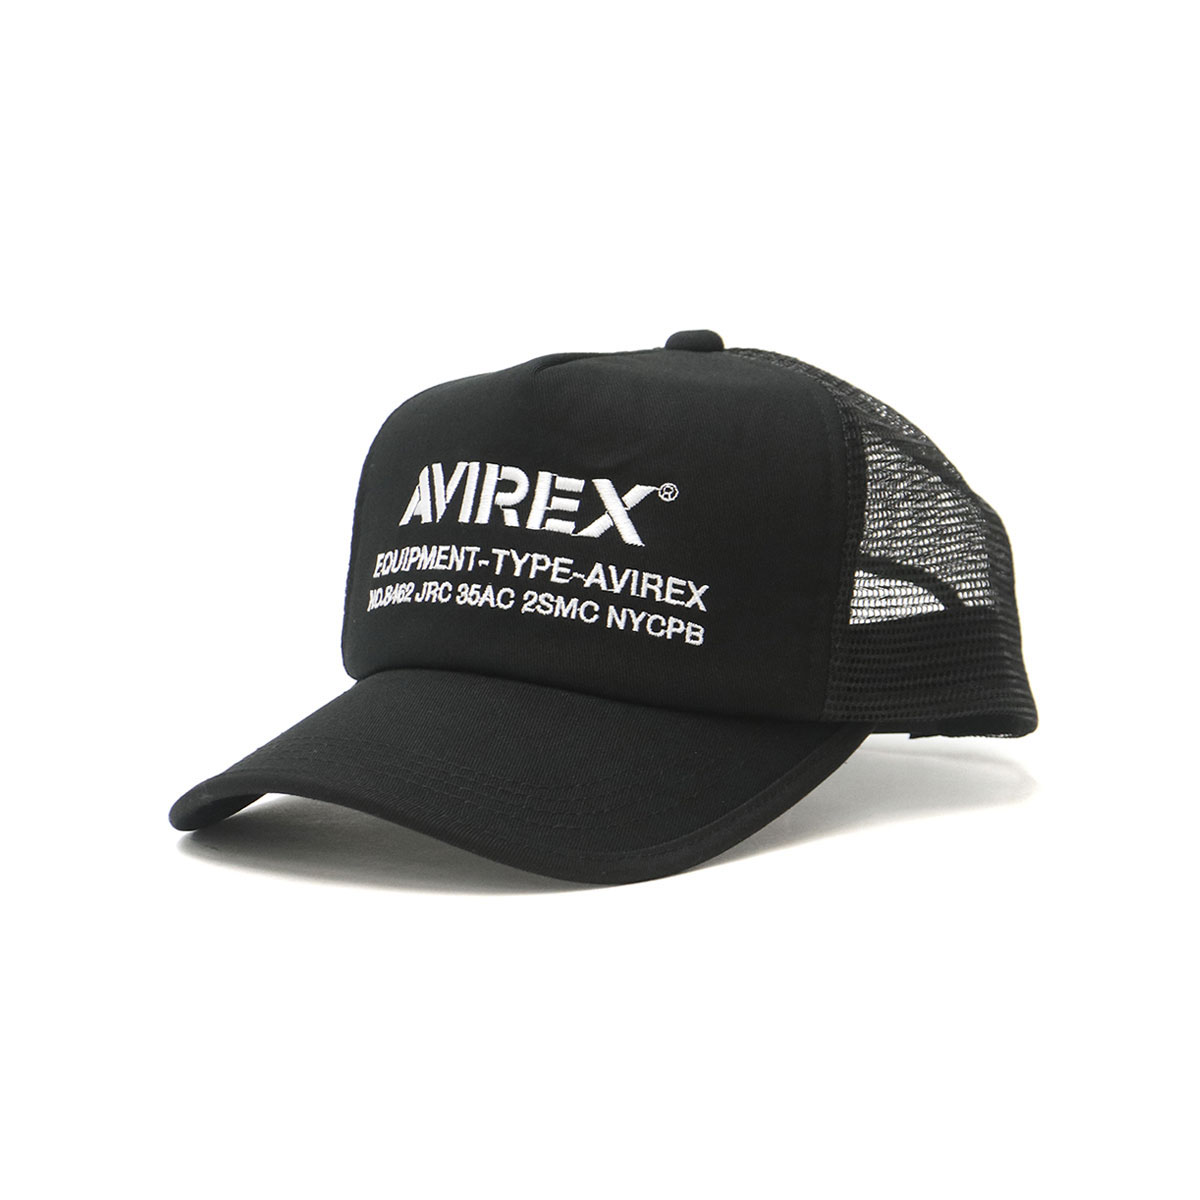 AVIREX アヴィレックス NUMBERING MESH CAP メッシュキャップ 14407300 